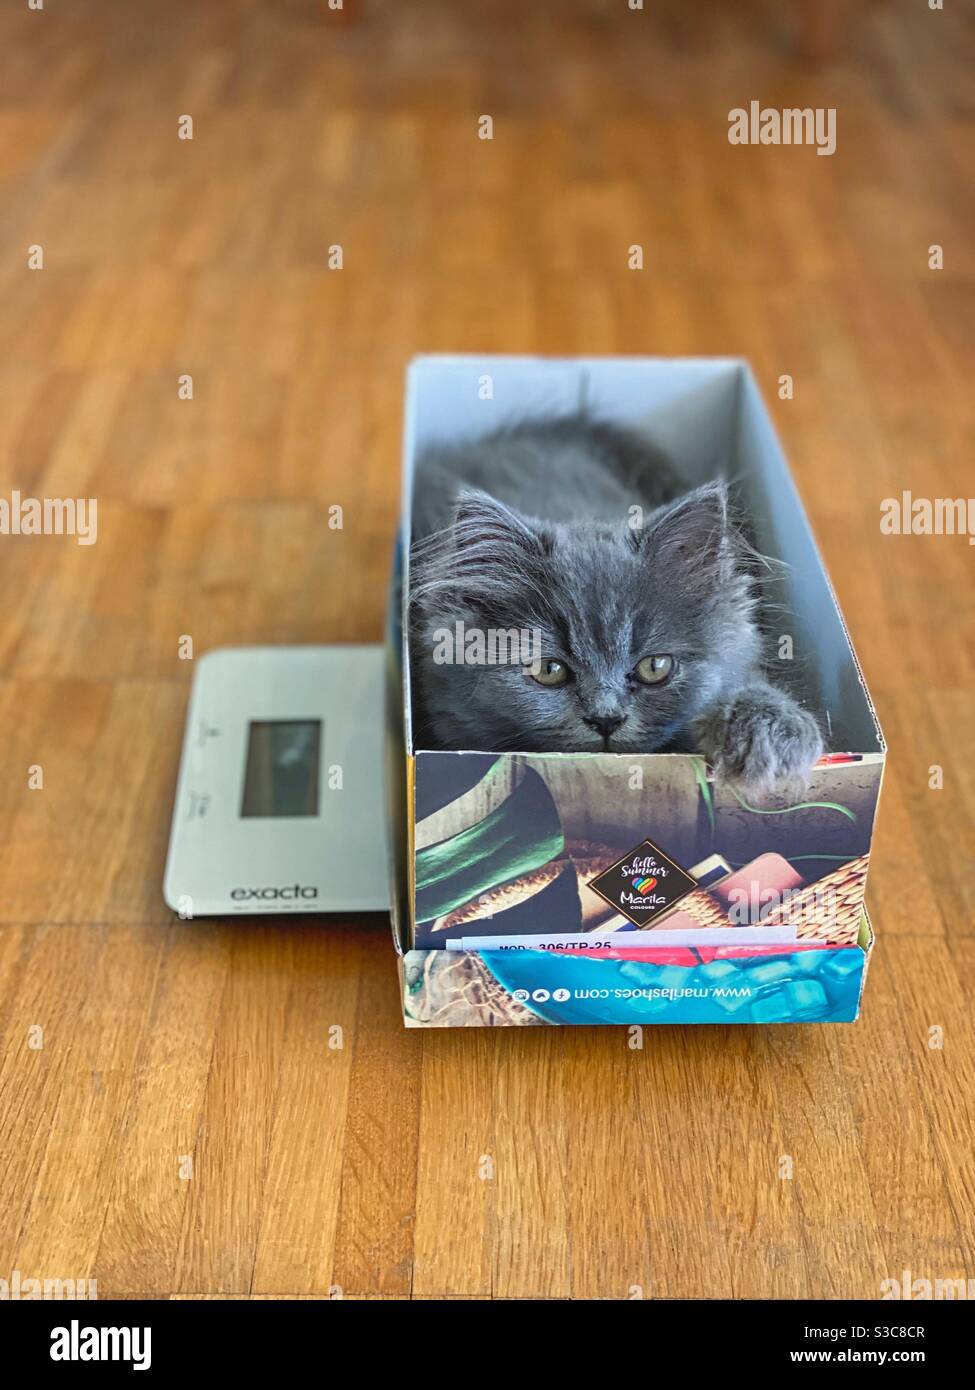 Gattino persiano blu di 3 mesi seduto in una scatola su una bilancia da cucina. Foto Stock